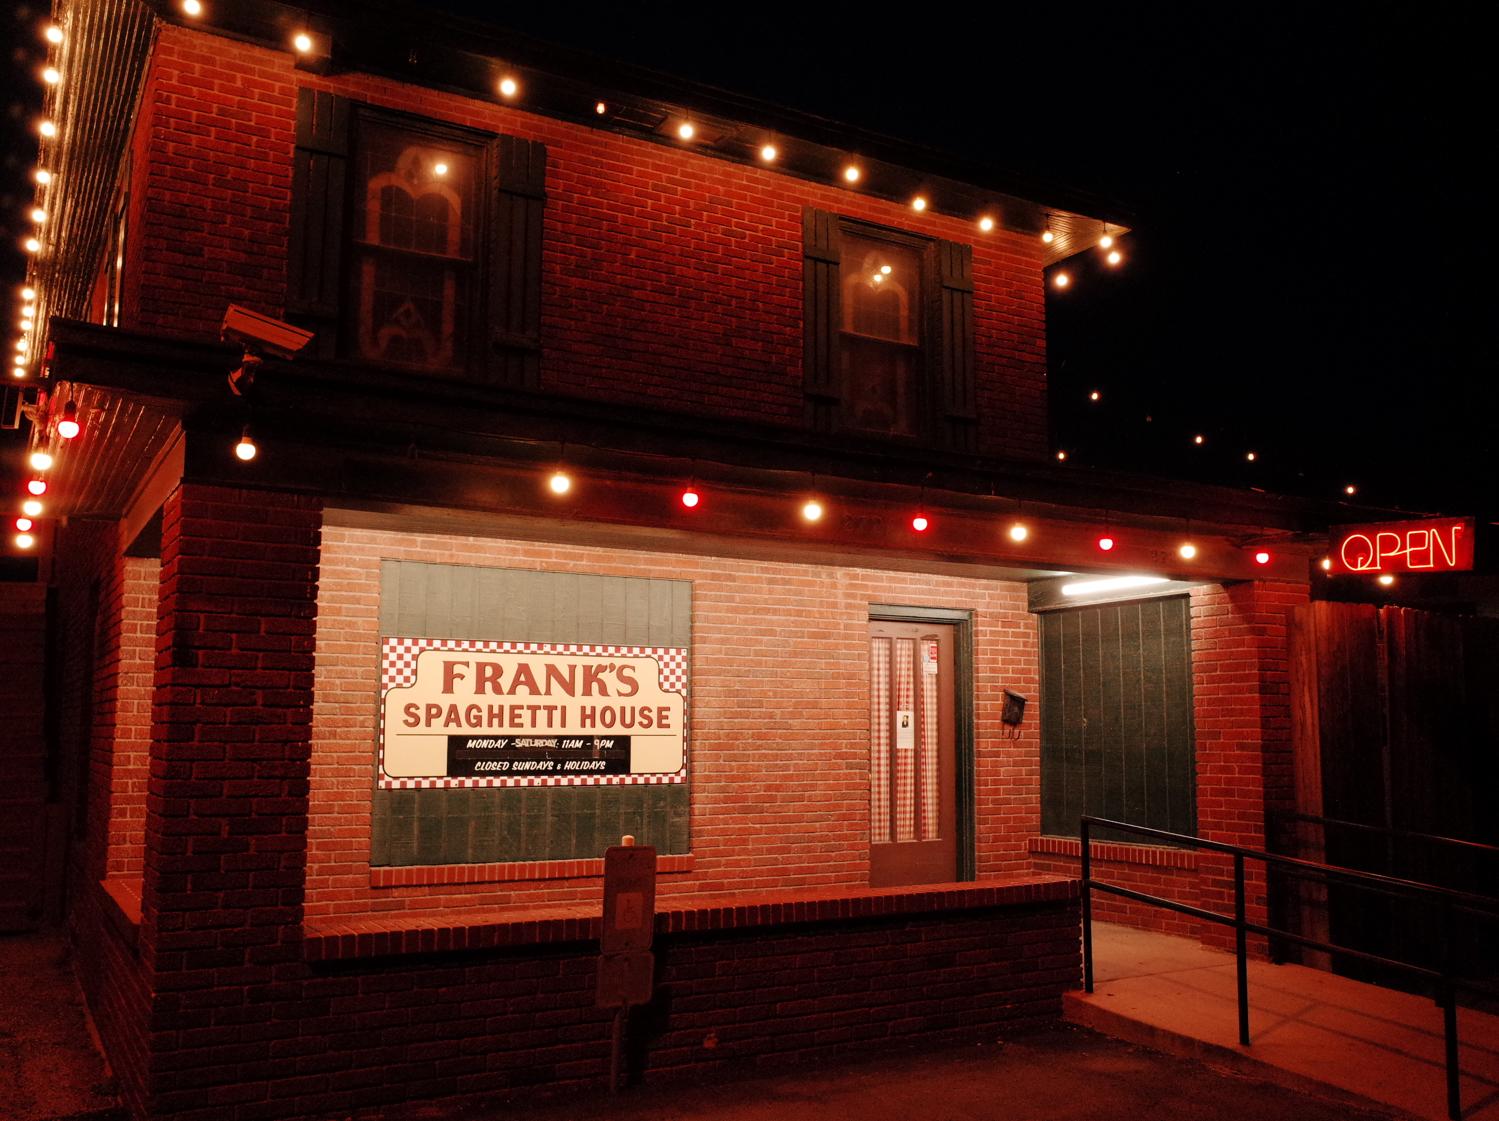 Frank's Spaghetti house